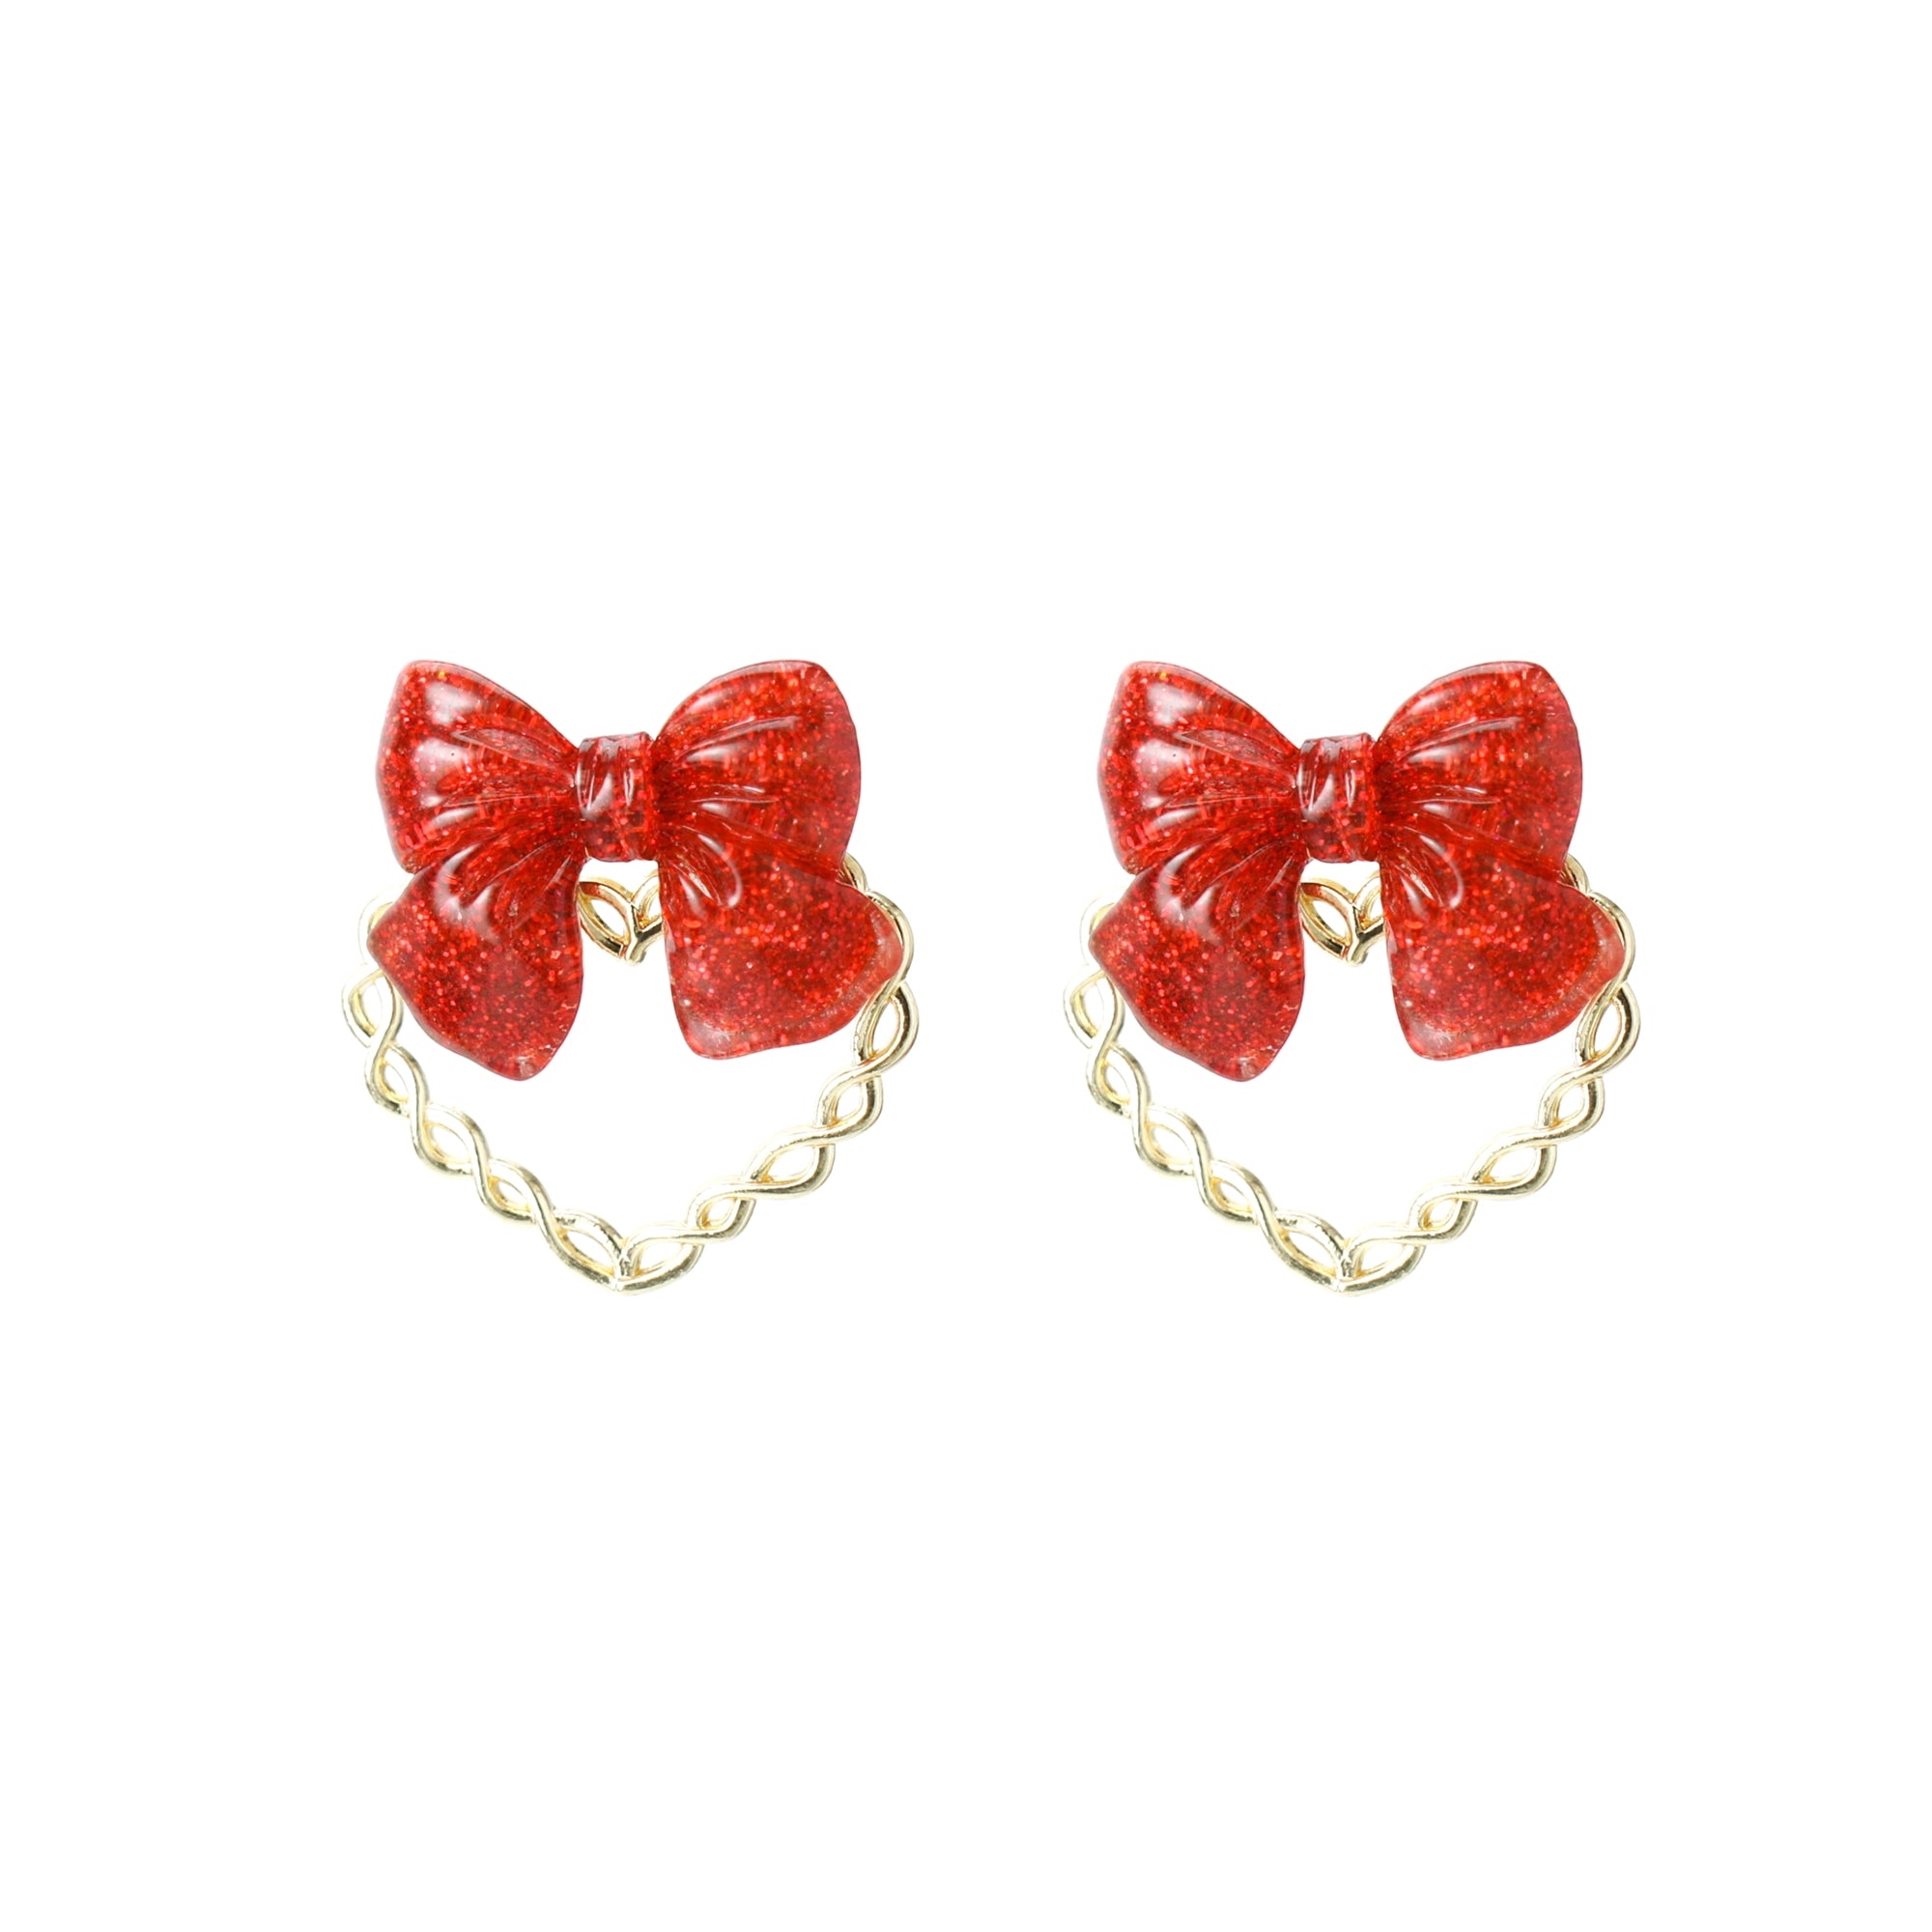 Kiki Glitter Bow and Rope Heart Earrings